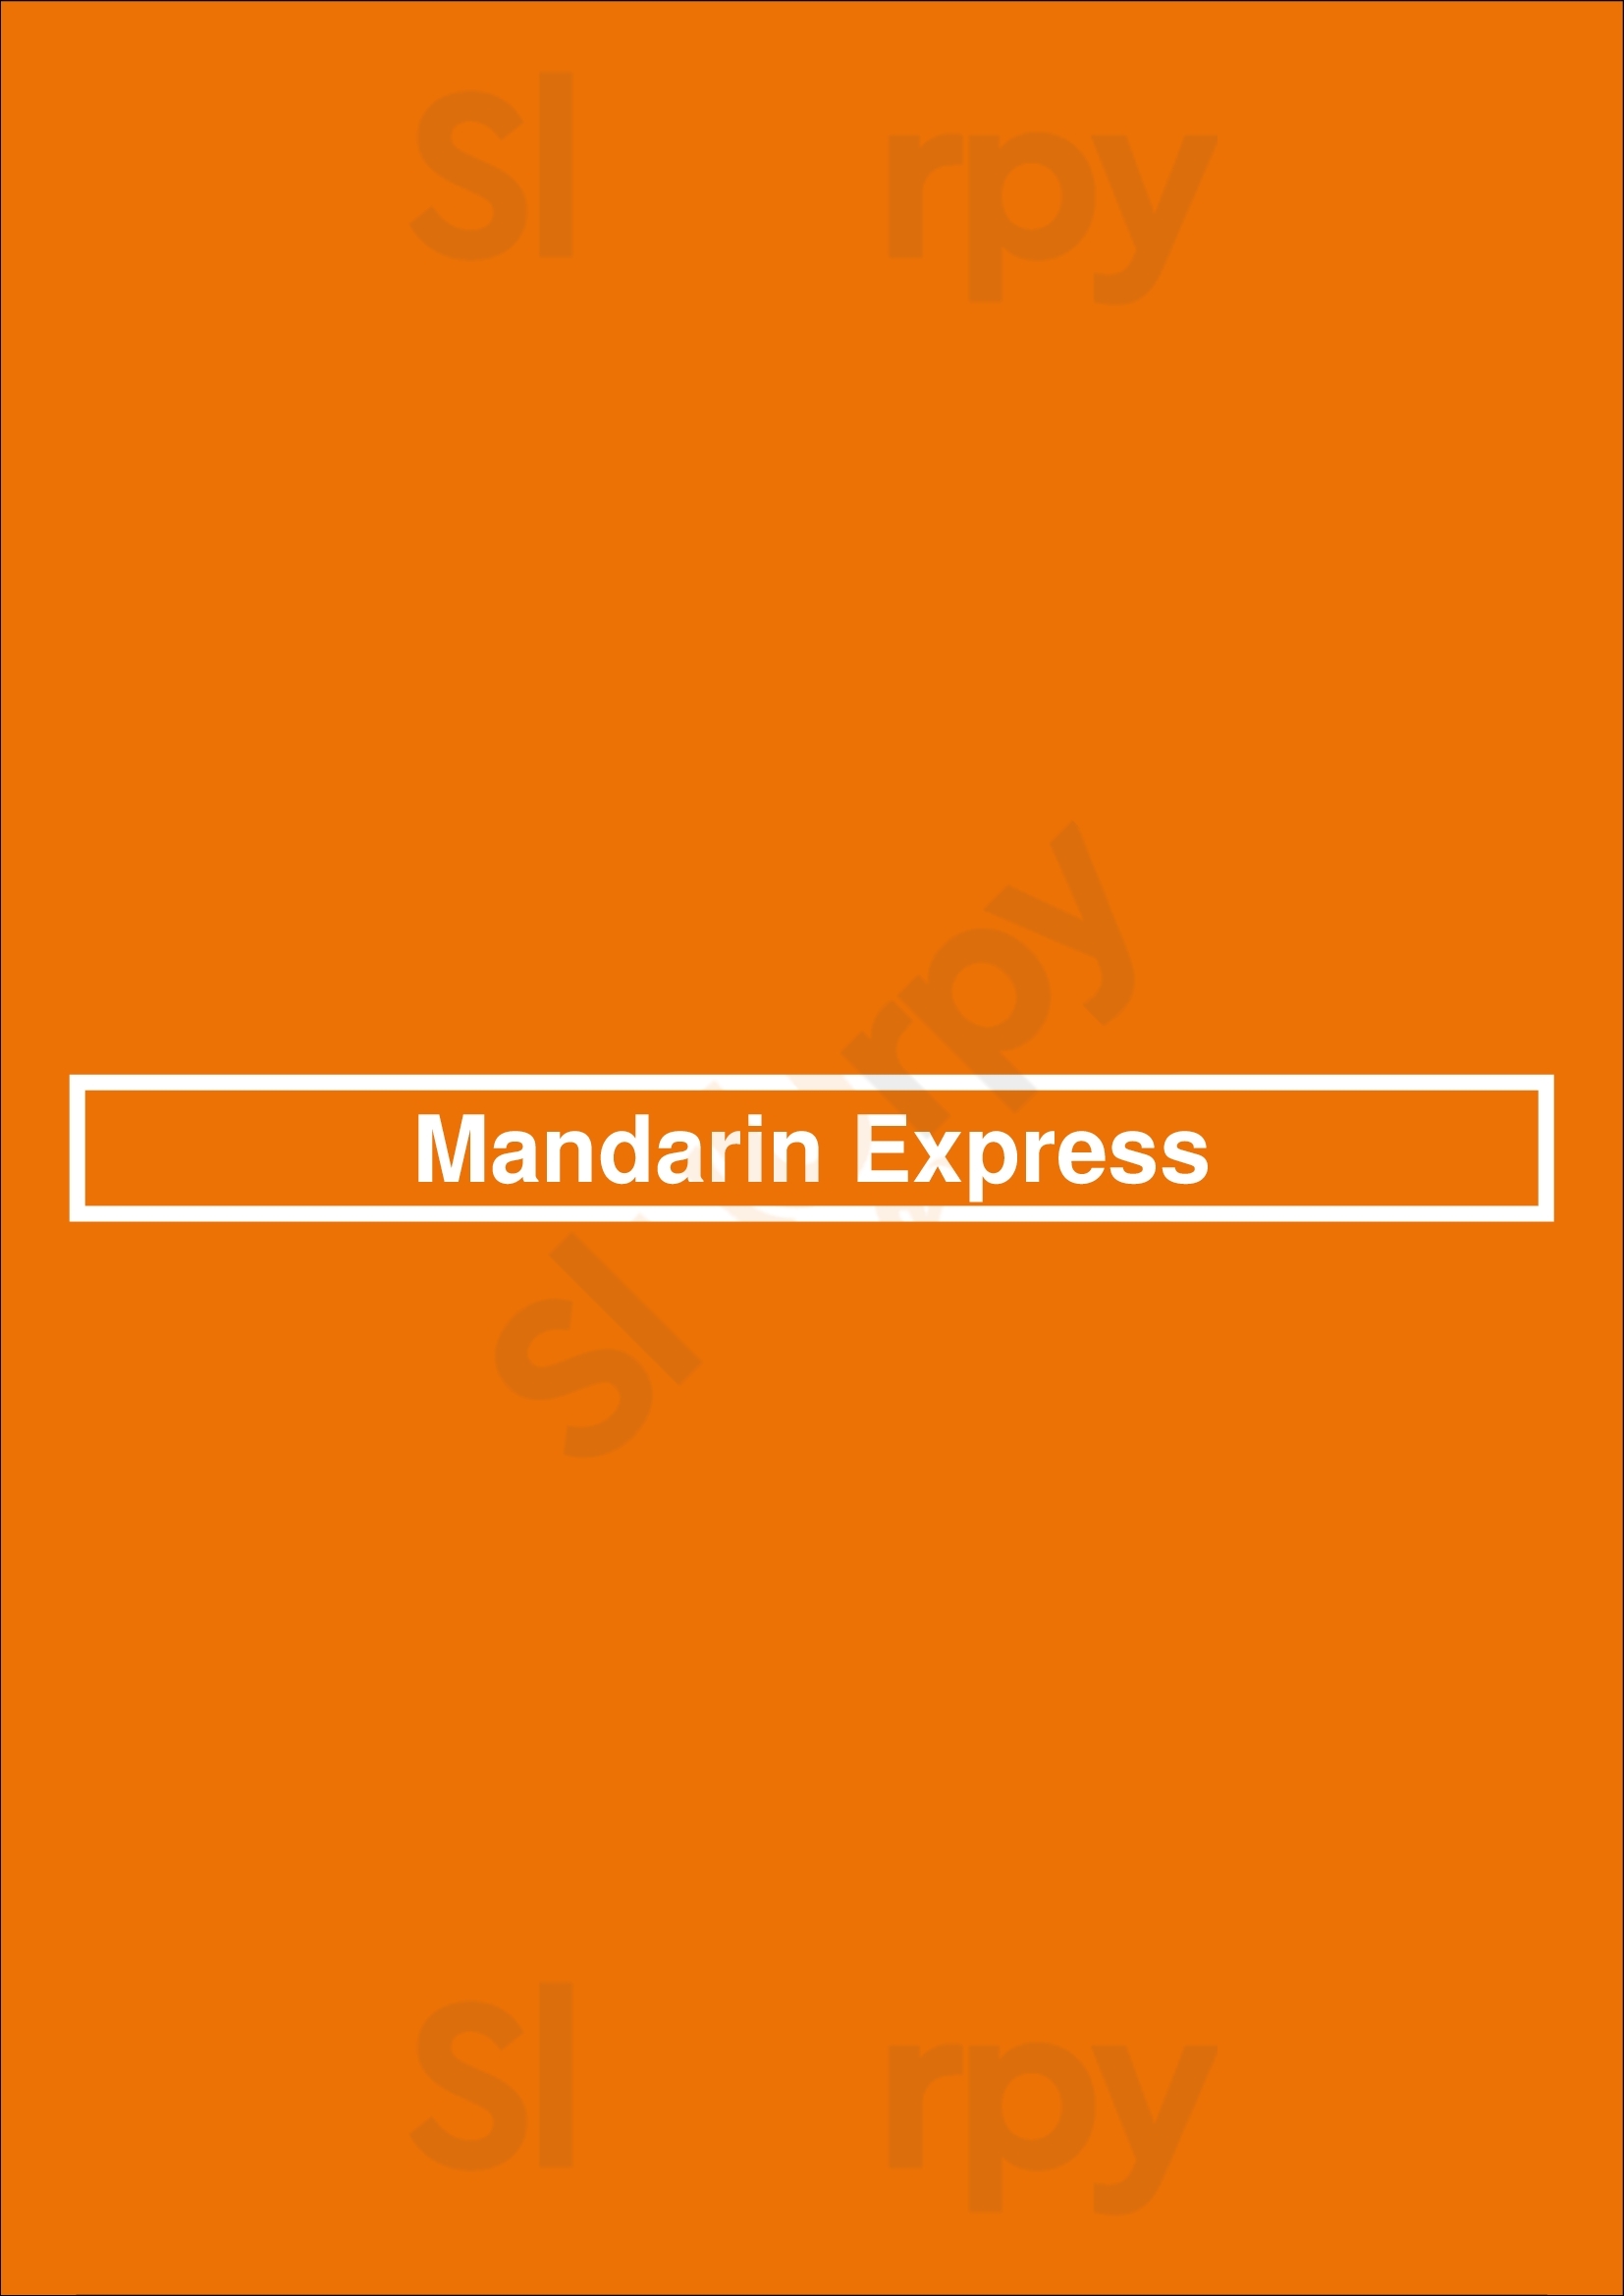 Mandarin Express Atlanta Menu - 1